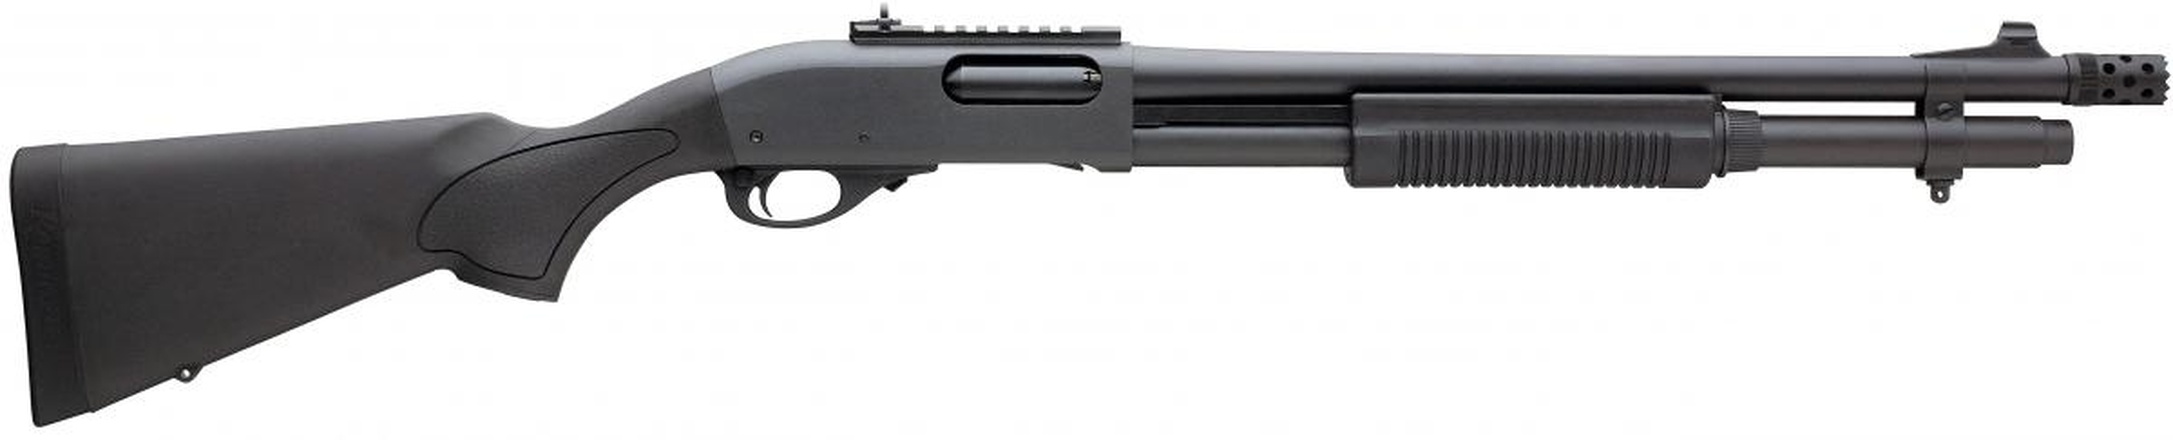 Don shot - Remington 870 Express Tactical